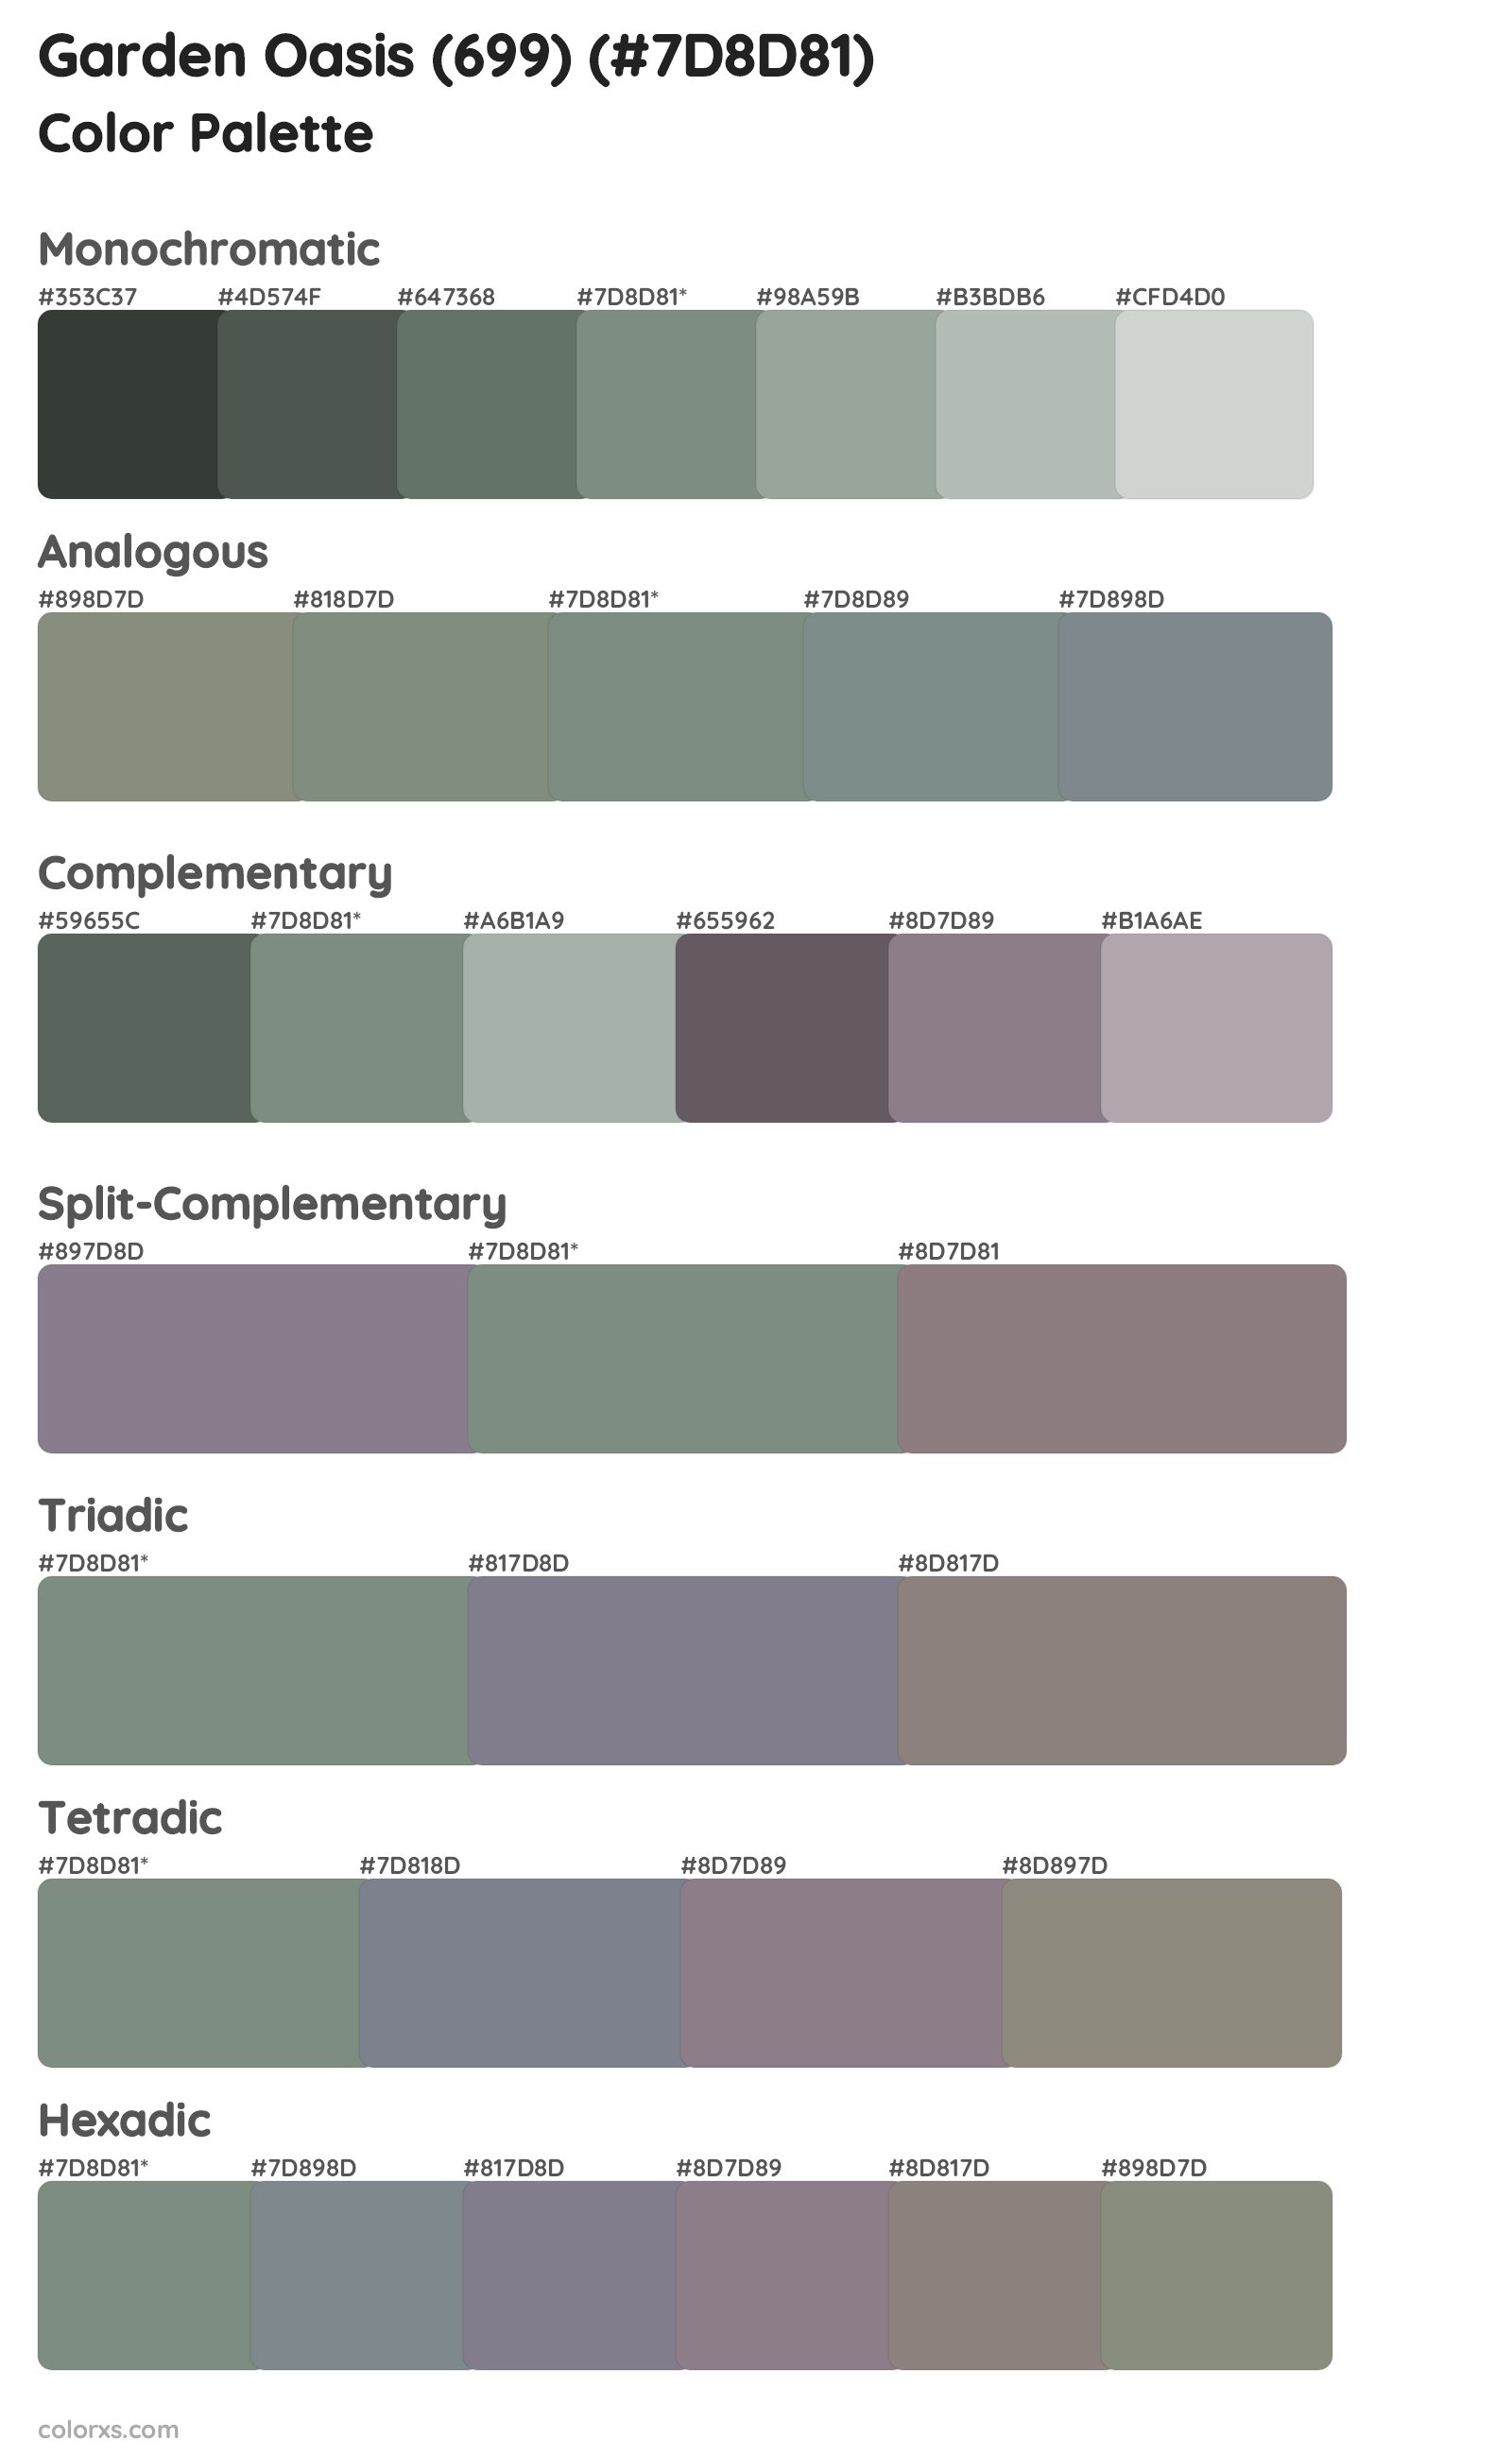 Garden Oasis (699) Color Scheme Palettes